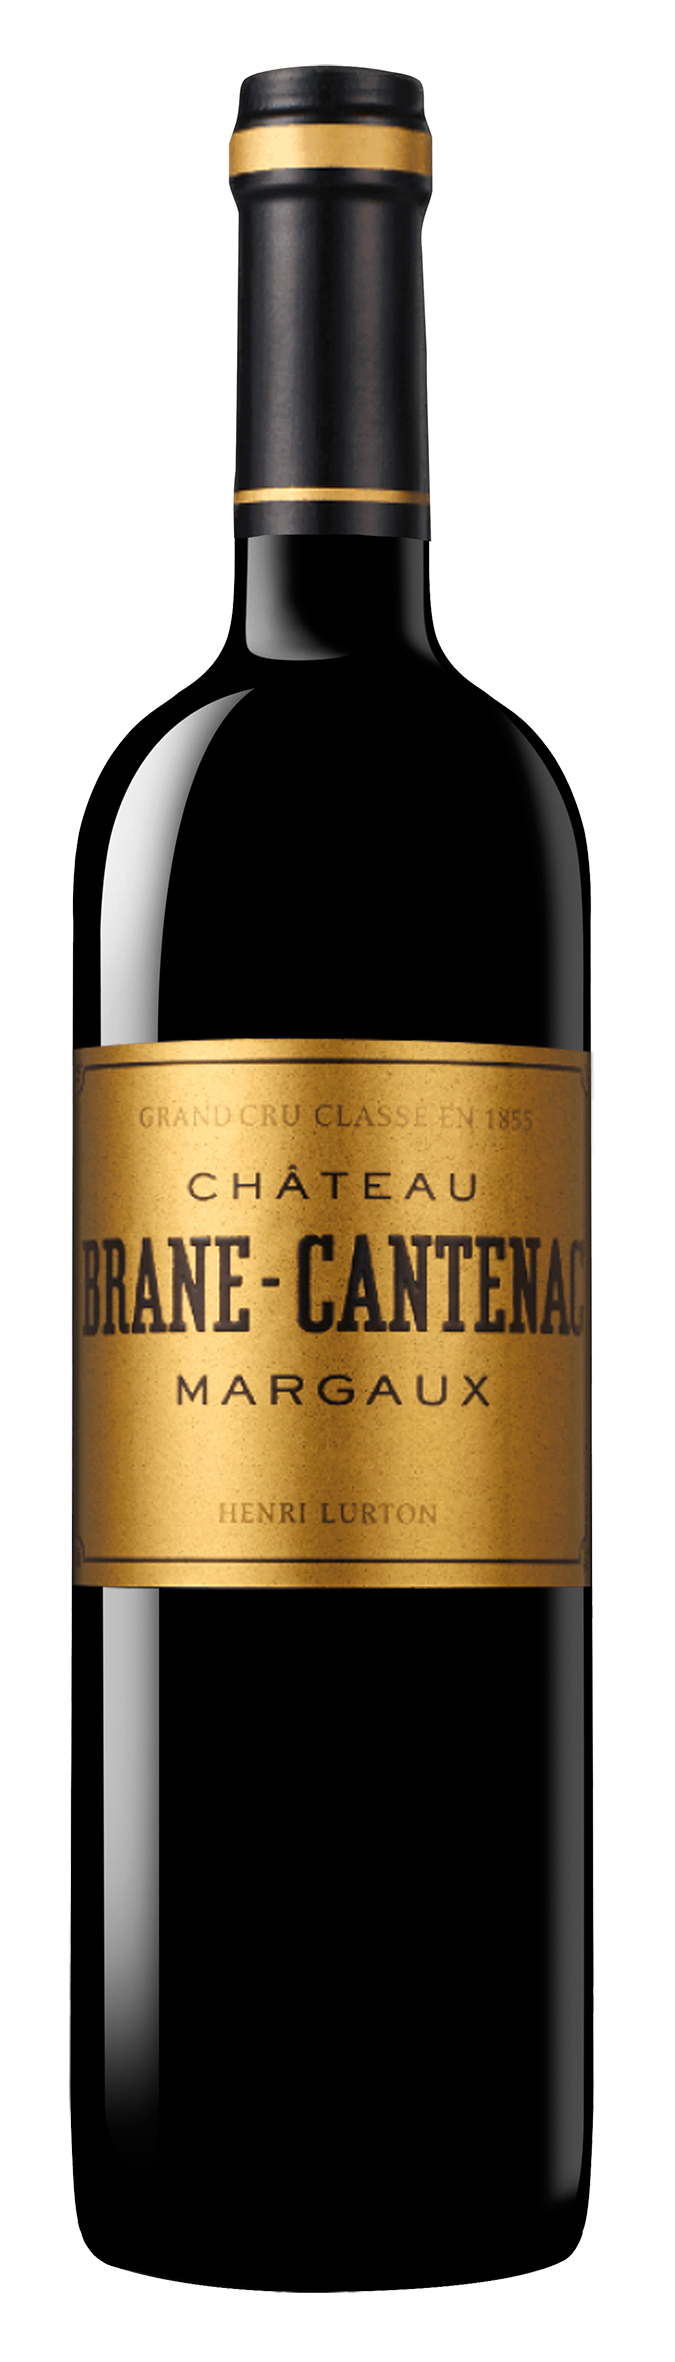 Margaux AOC 2ème Grand Cru Classé Château Brane-Cantenac 2016